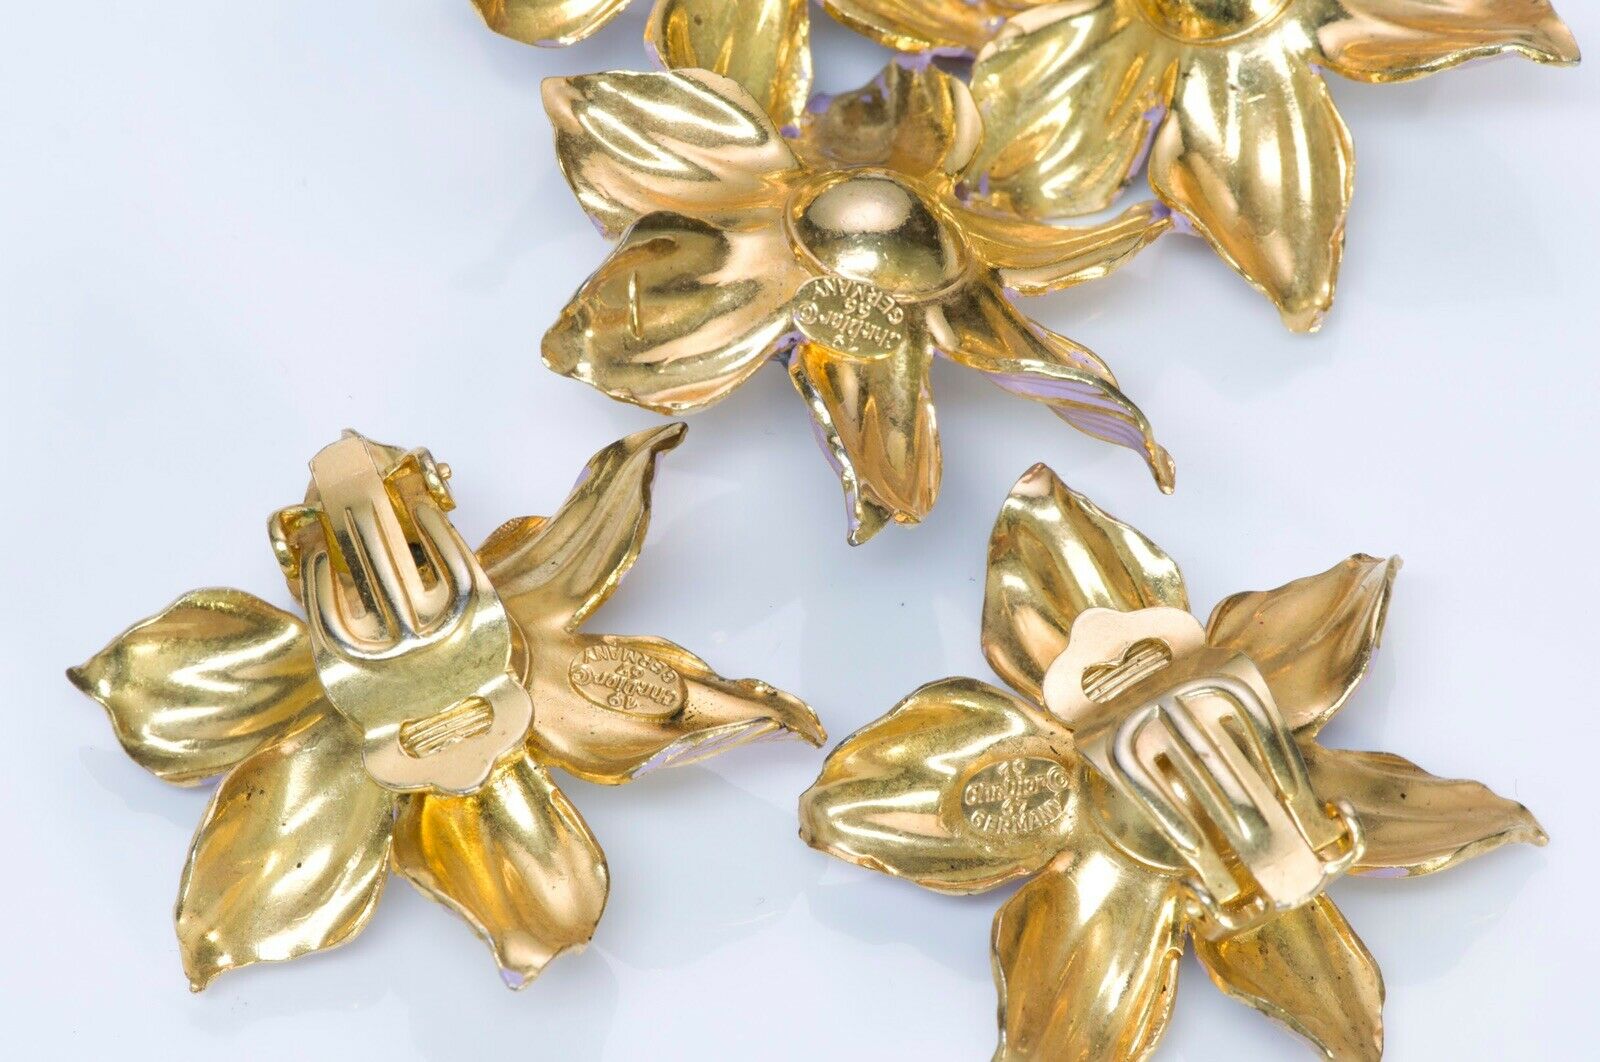 Christian DIOR 1966-1967 Henkel & Grosse Enamel Beads Flower Brooch Earrings Set - DSF Antique Jewelry